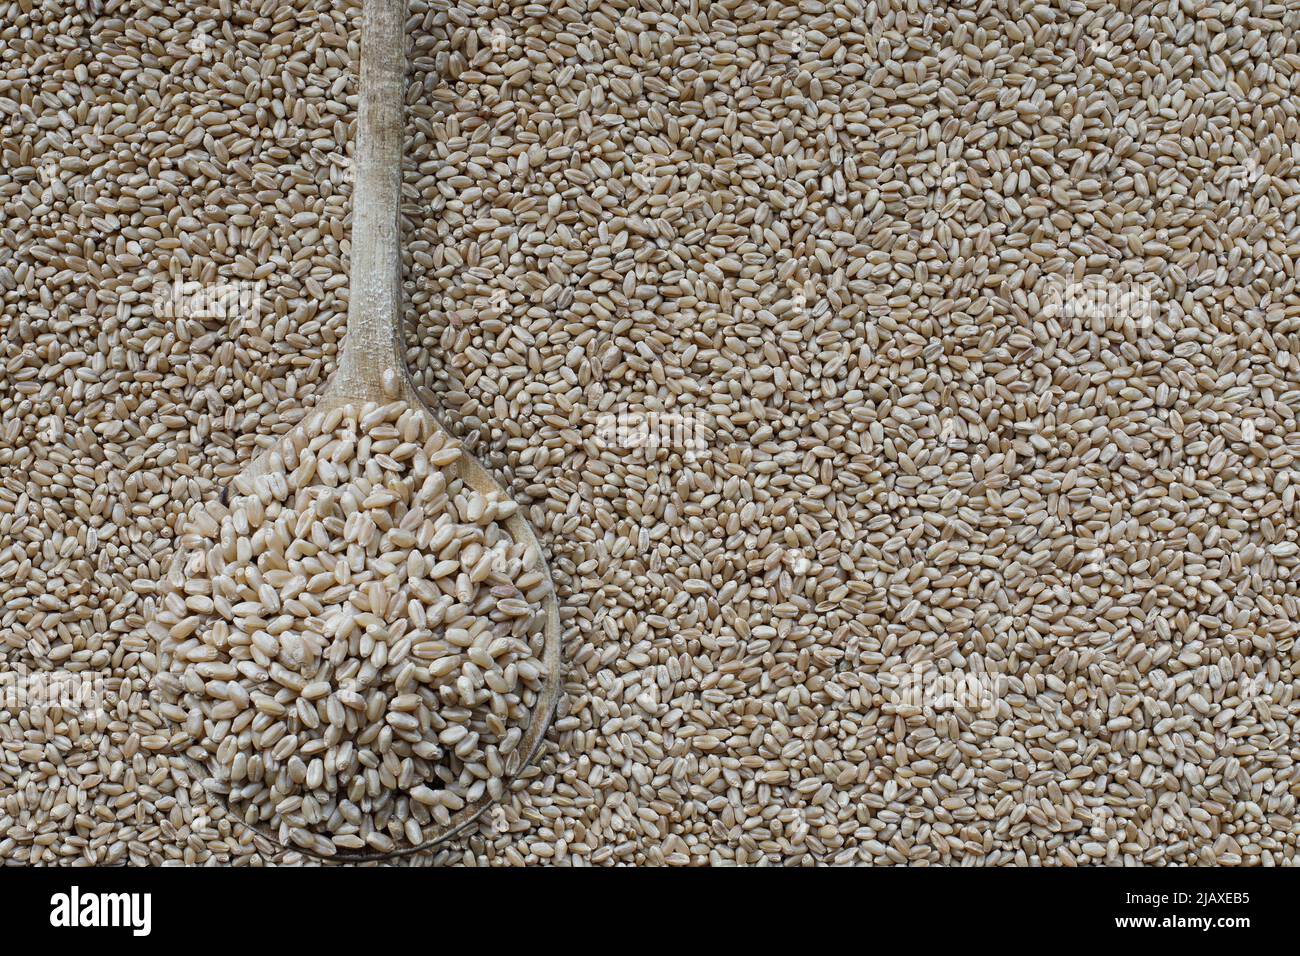 Cuchara de madera llena de bayas de trigo blanco duro. Imagen tomada desde la vista superior. Plano. Foto de stock